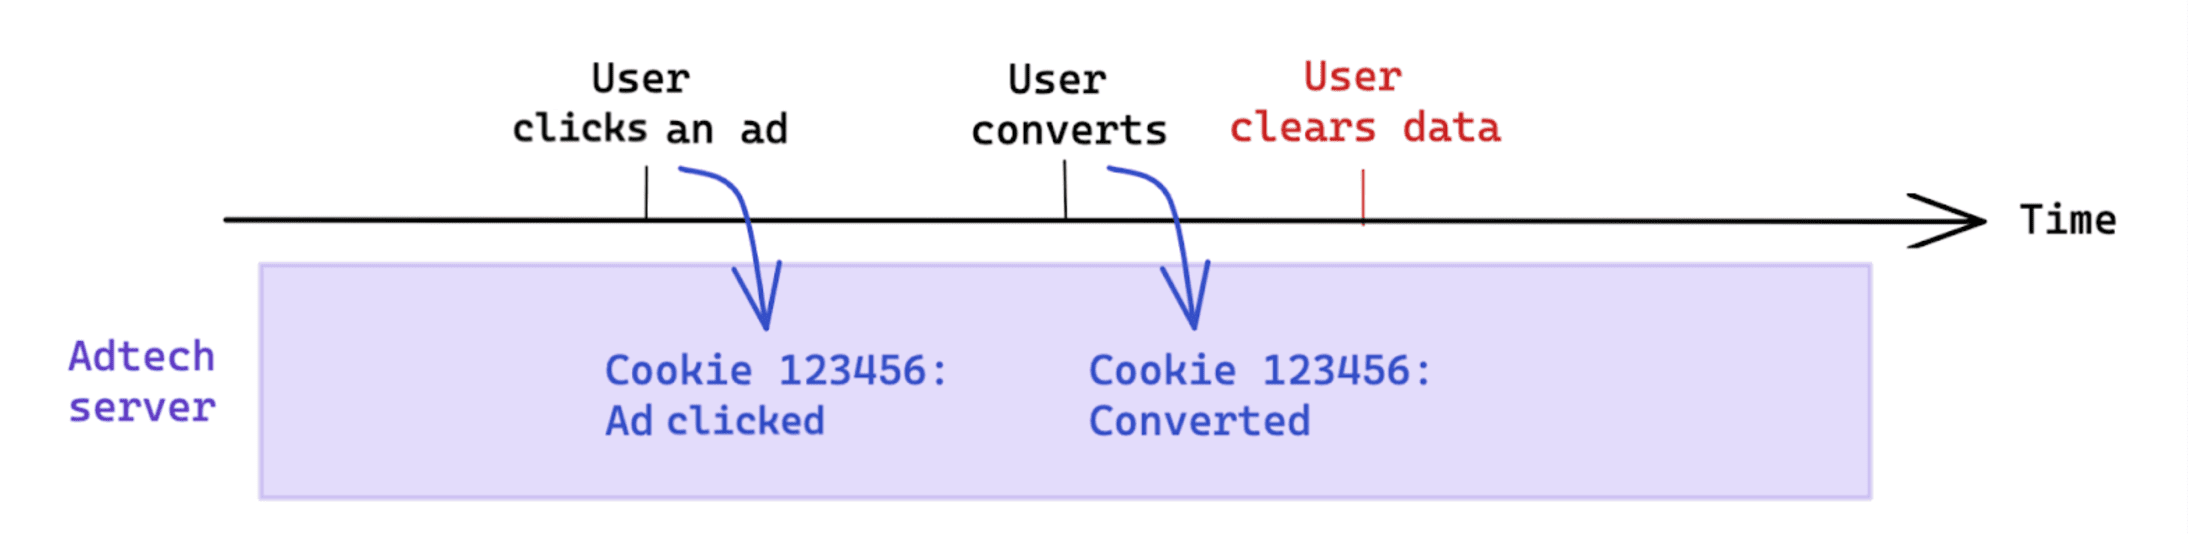 コンバージョン後にユーザーが開始したデータ消去は、Cookie ベースの測定には影響しません。